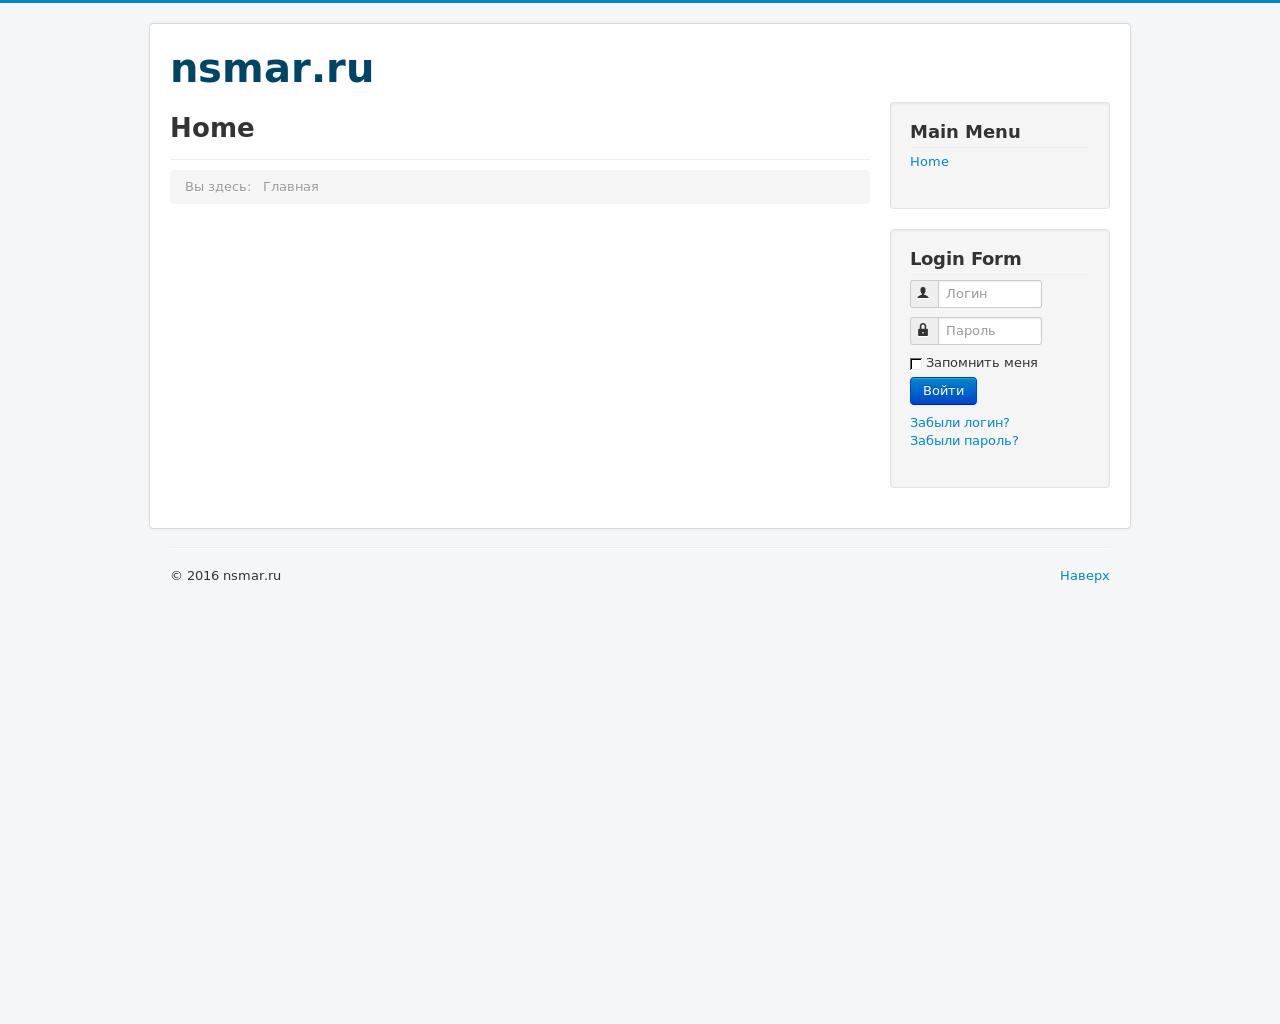 Изображение сайта nsmar.ru в разрешении 1280x1024